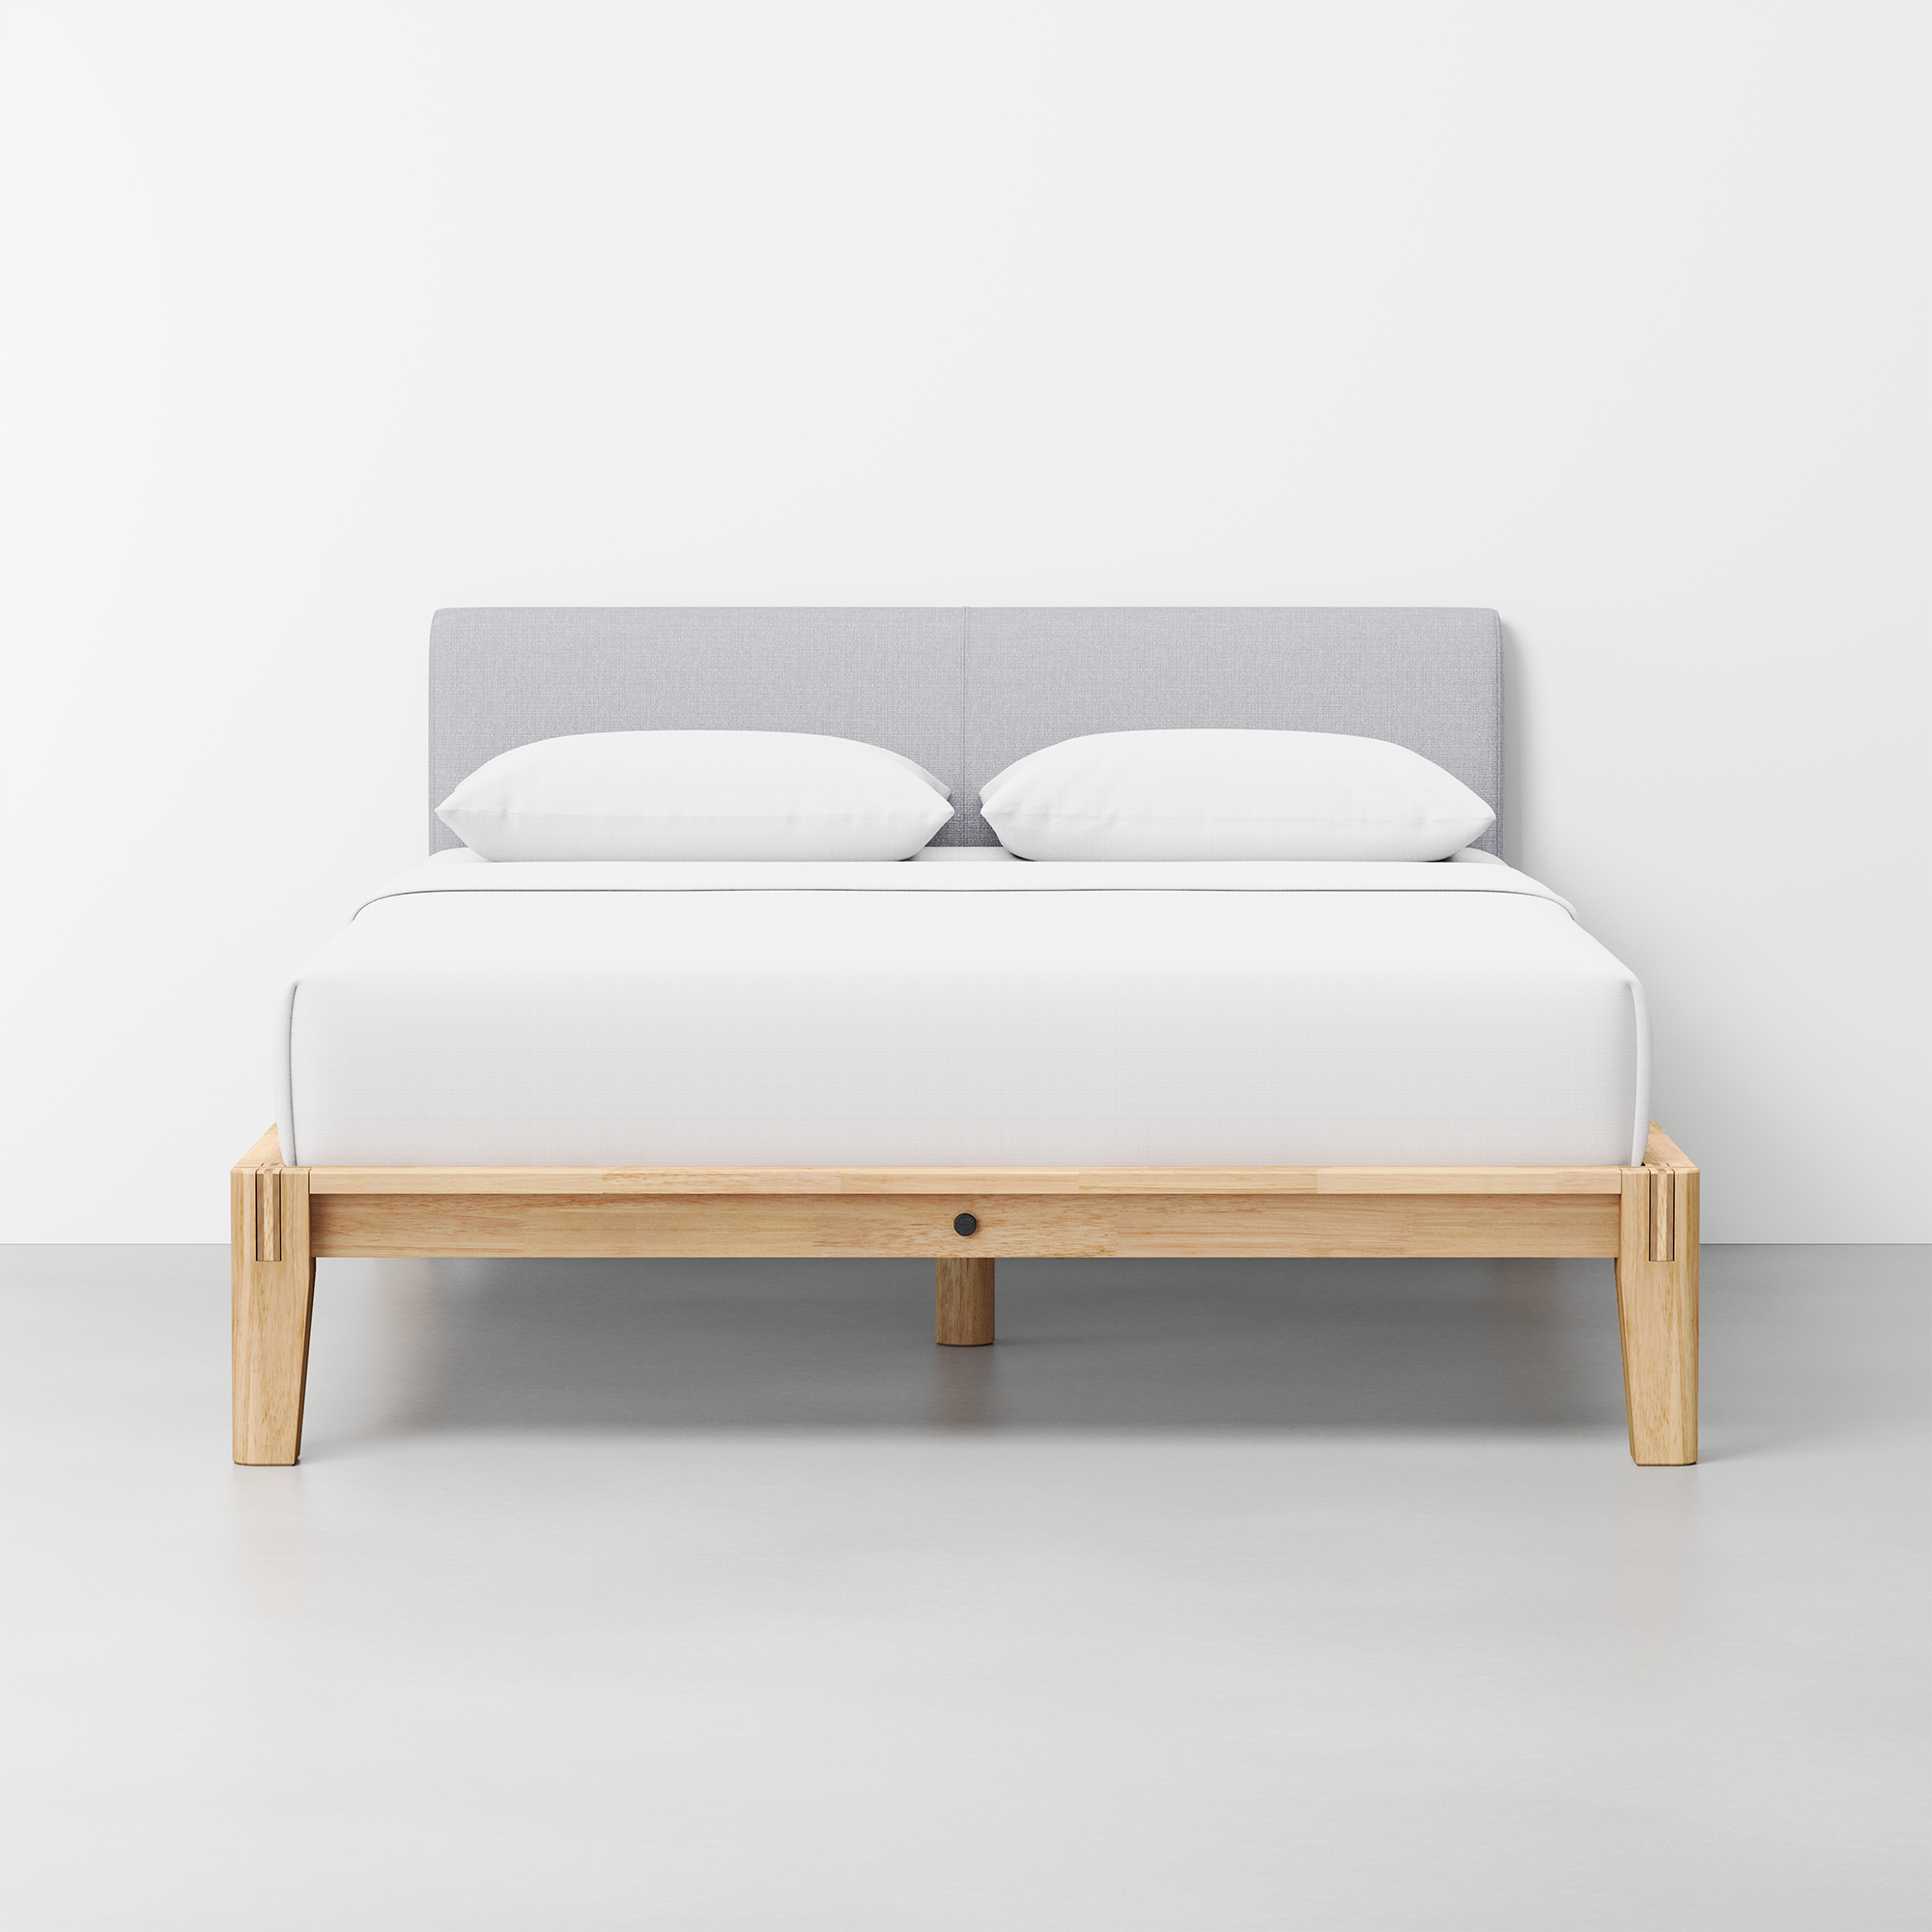 The Bed (Natural / Fog Grey) - Render - Front